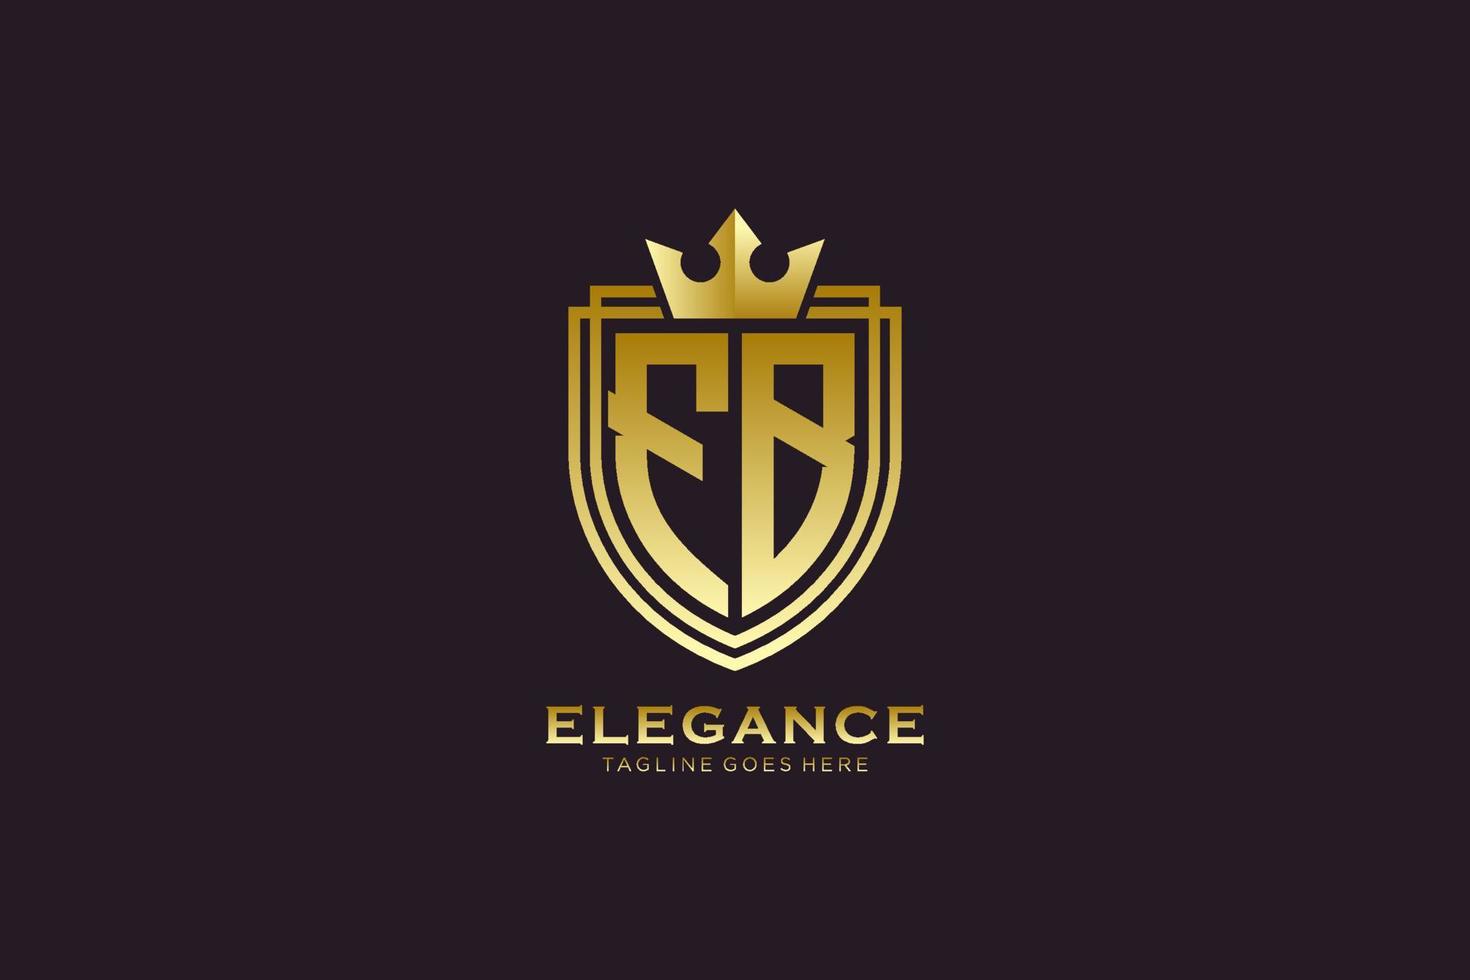 logo monogramme de luxe élégant initial fb ou modèle de badge avec volutes et couronne royale - parfait pour les projets de marque de luxe vecteur